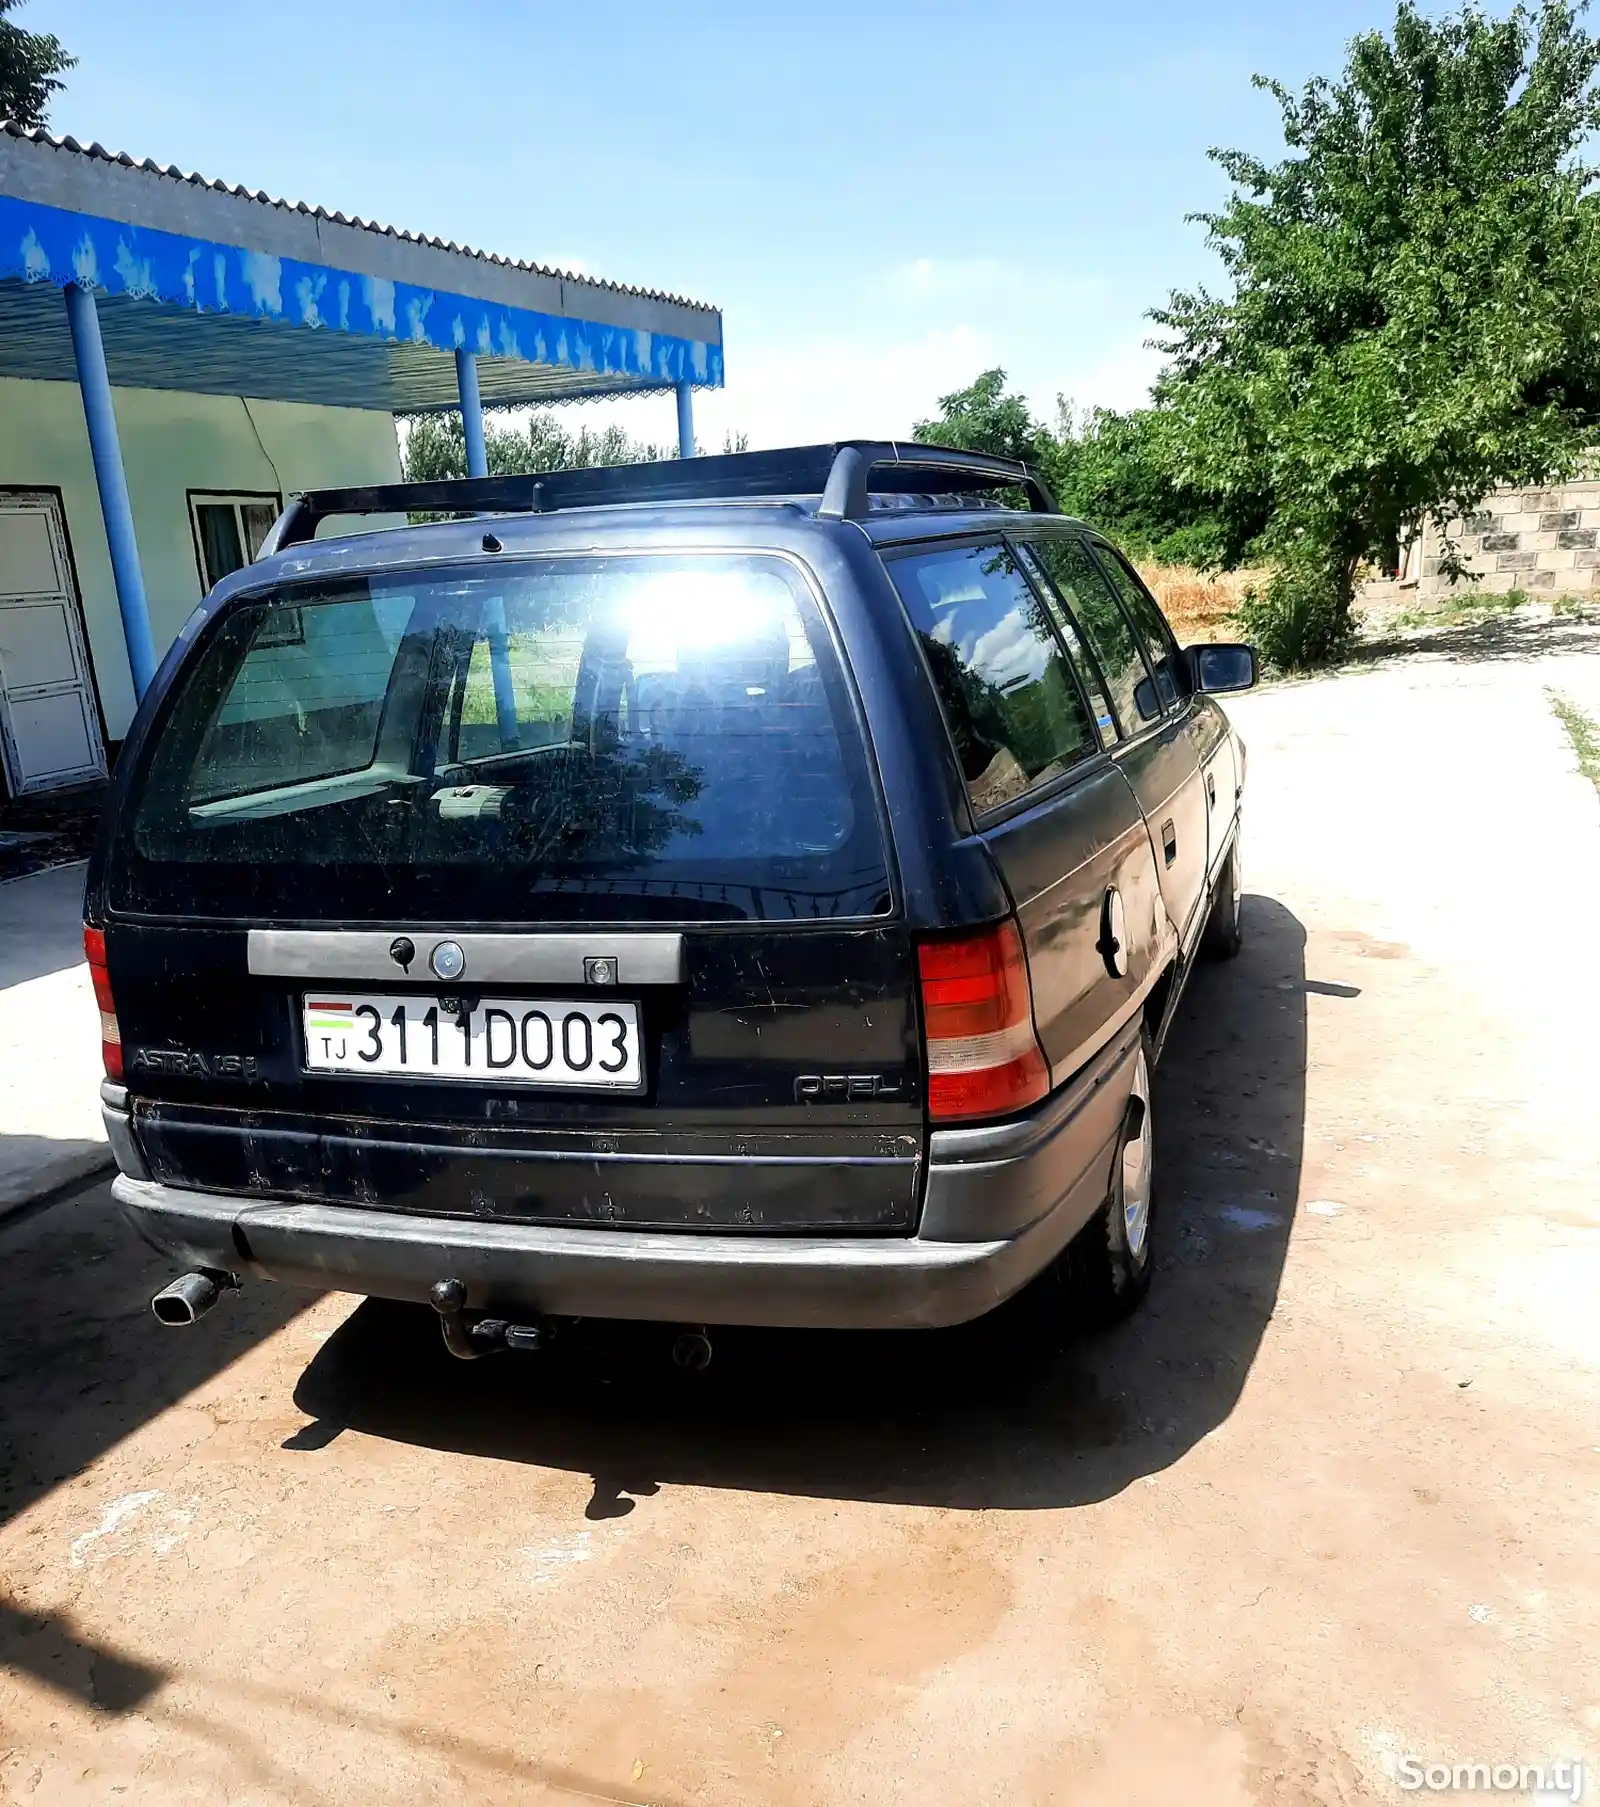 Opel Astra F, 1991-1